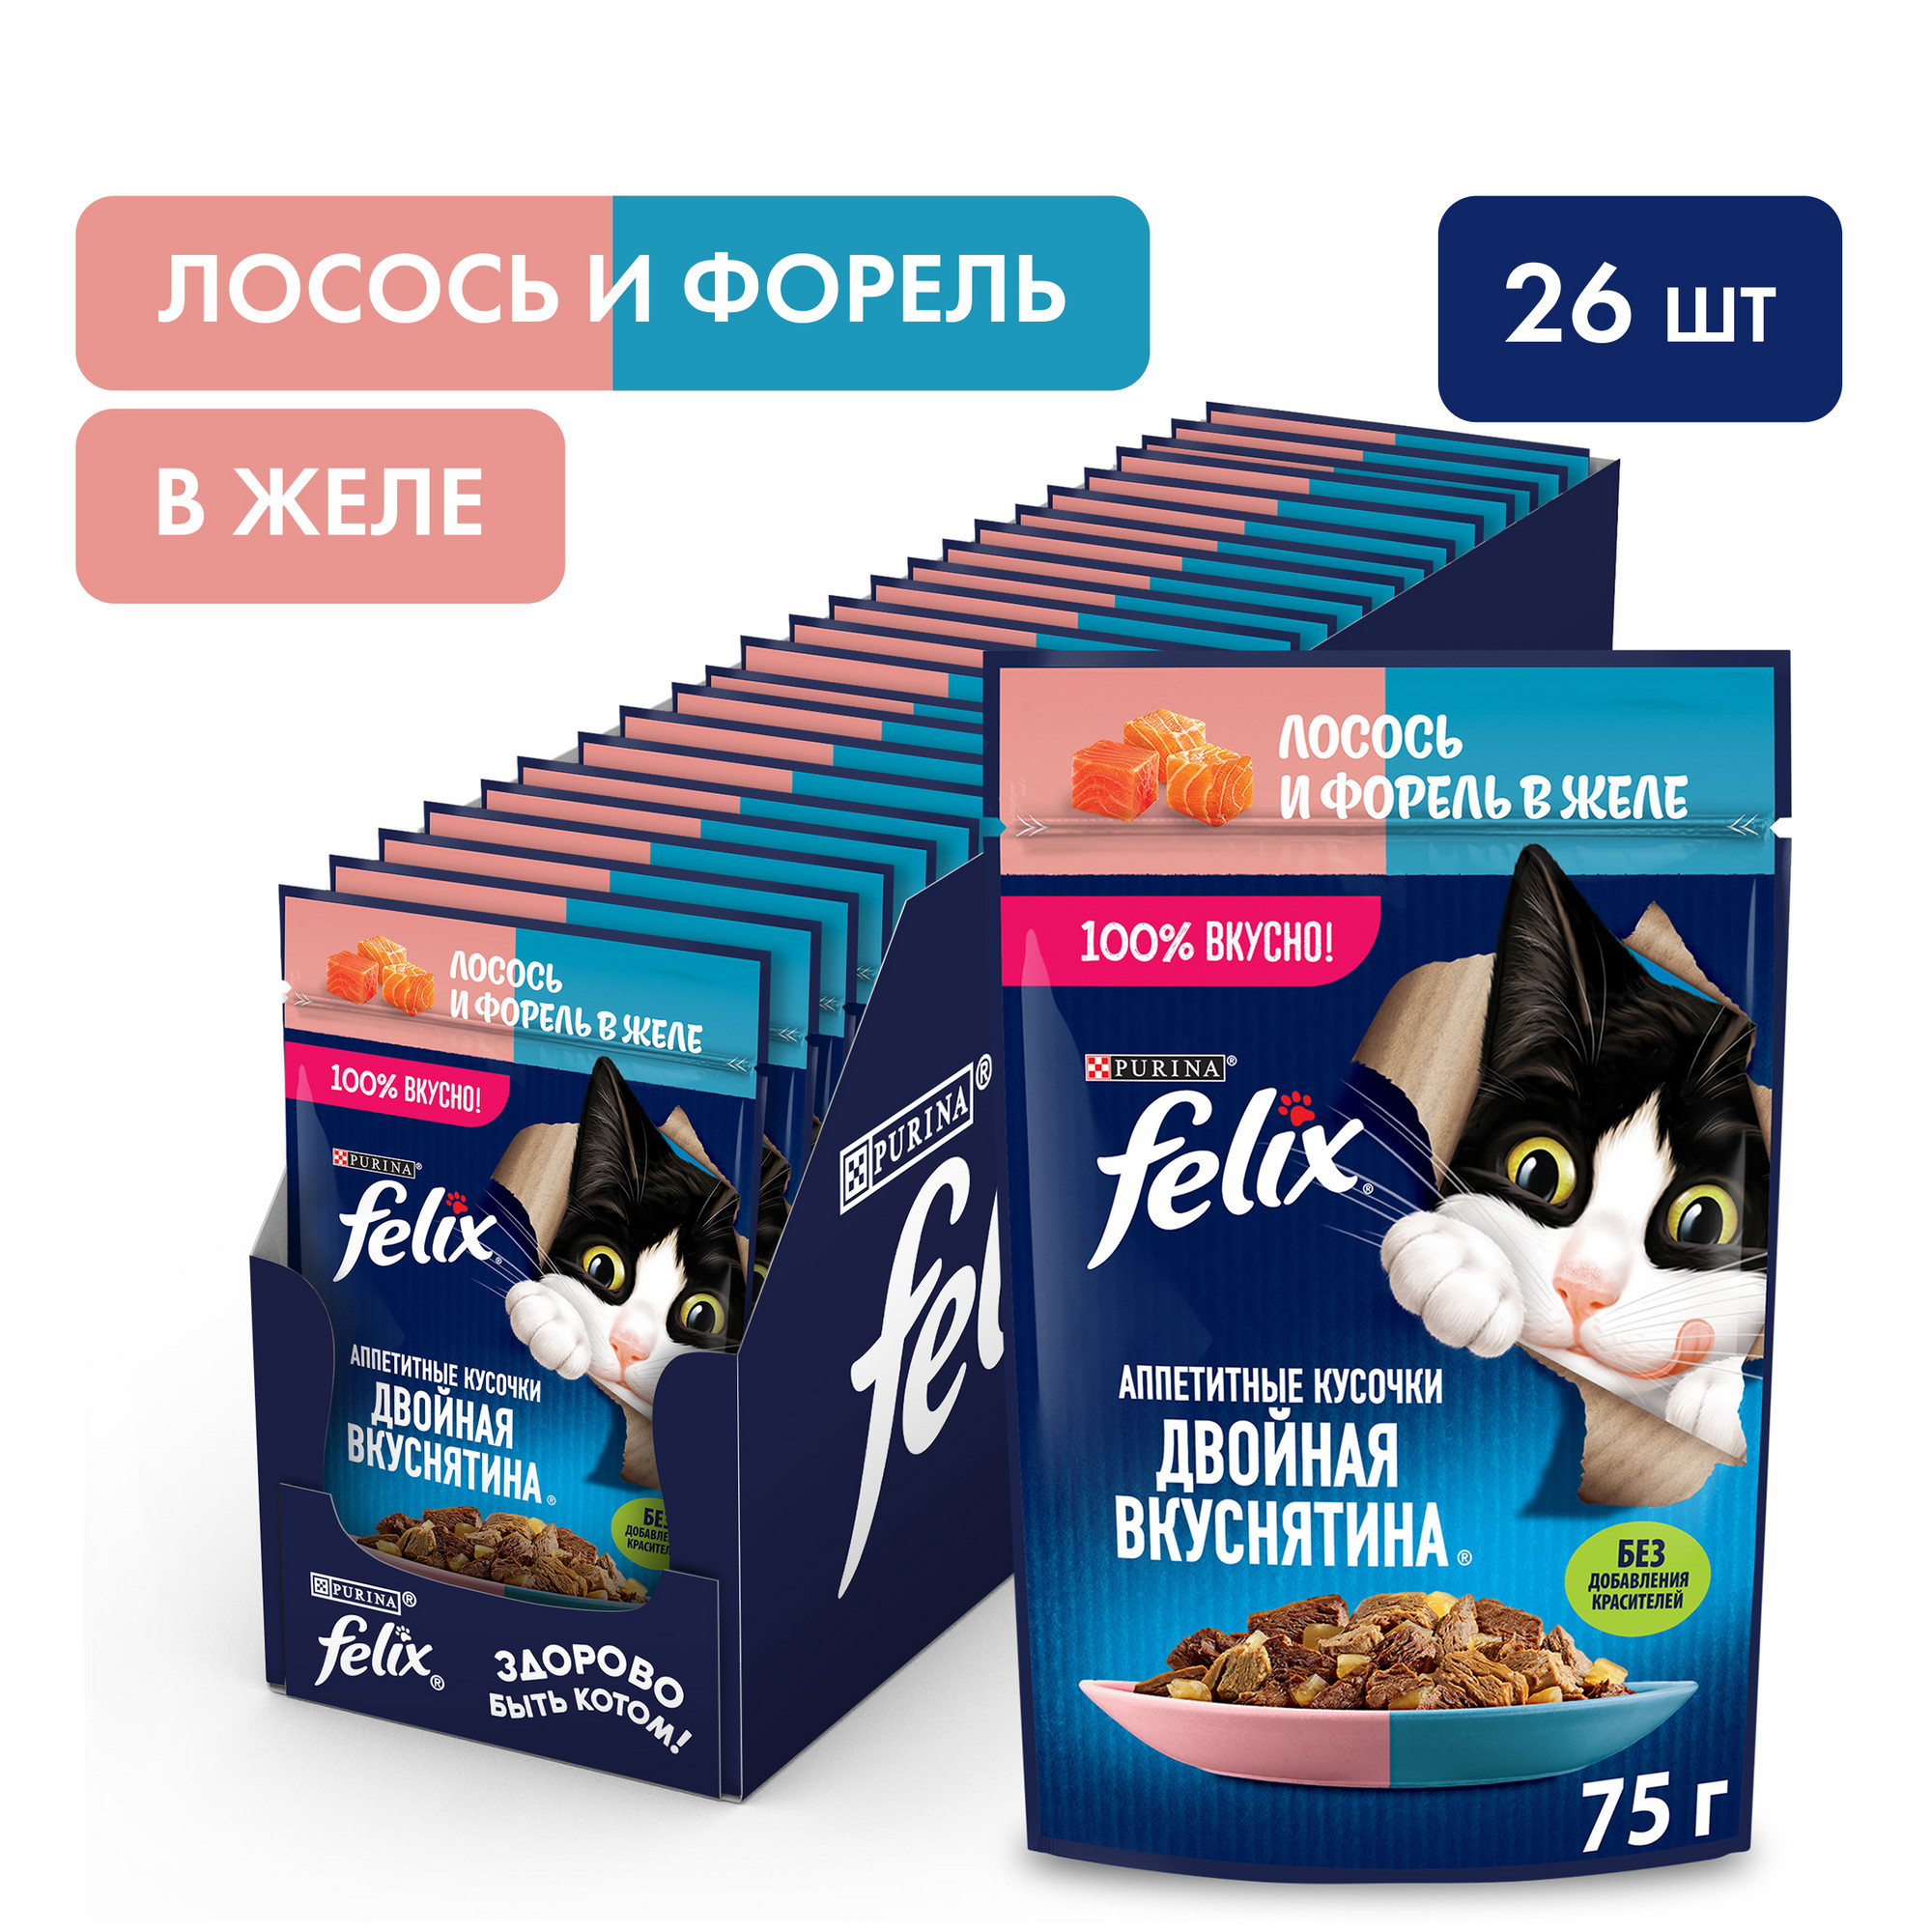 Влажный корм для кошек Felix Двойная вкуснятина с лососем и форелью в желе, 26 шт по 75 г - купить в Мармелад, цена на Мегамаркет